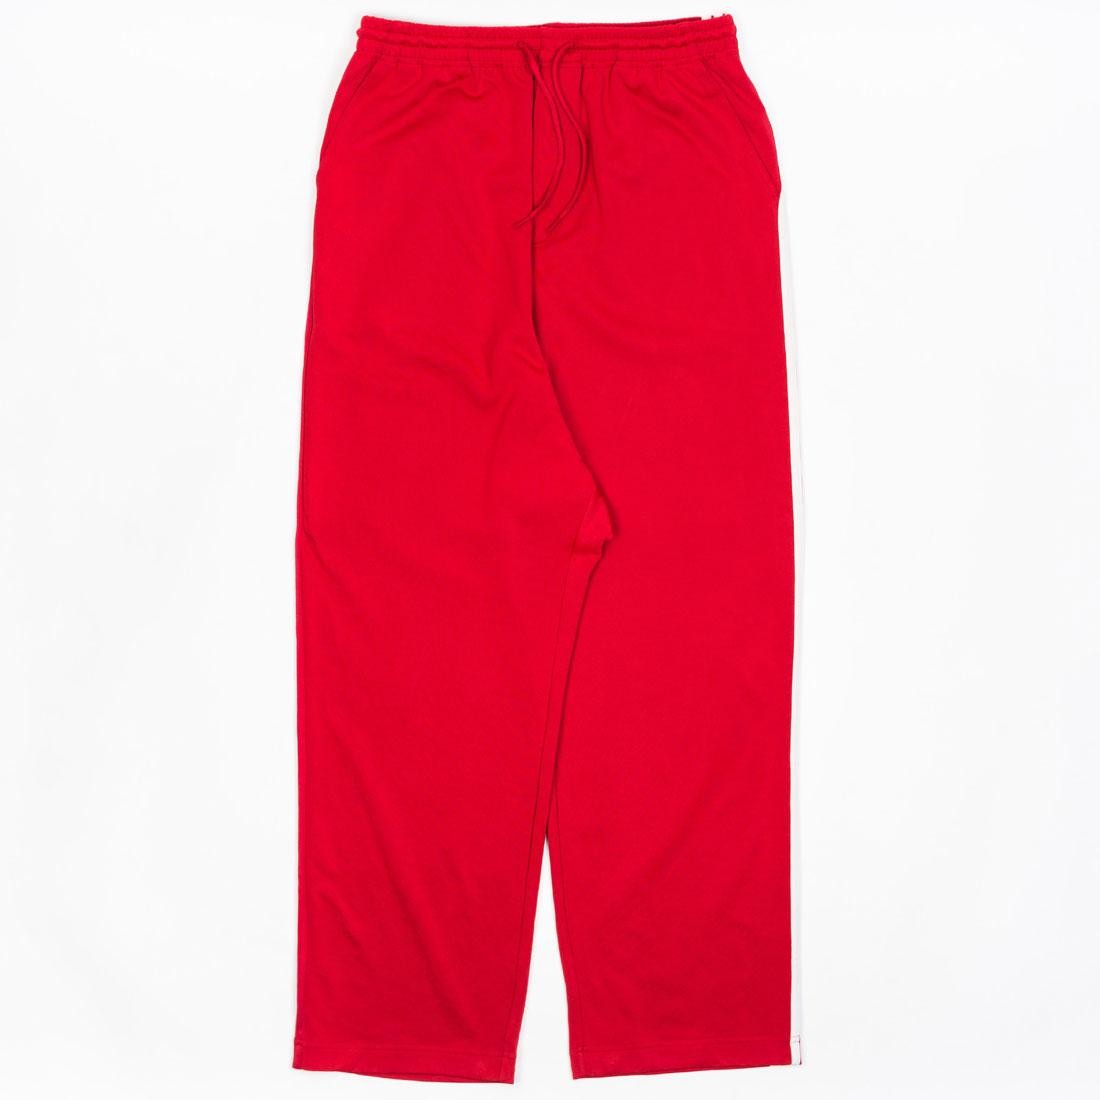 adidas red pants mens